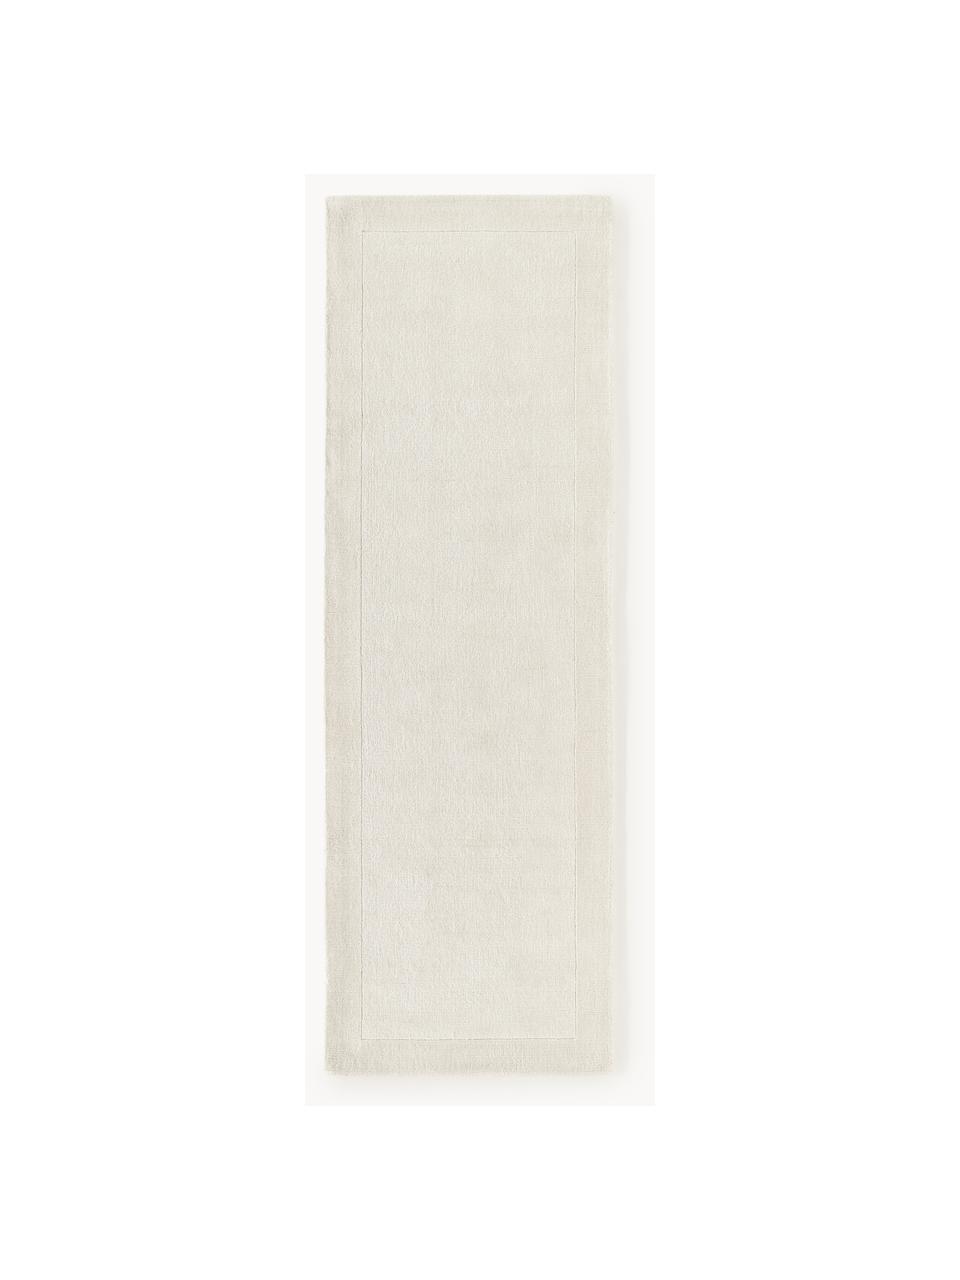 Třpytivý běhoun s krátkým vlasem Kari, 100 % polyester, certifikace GRS, Krémově bílá, Š 80 cm, D 250 cm